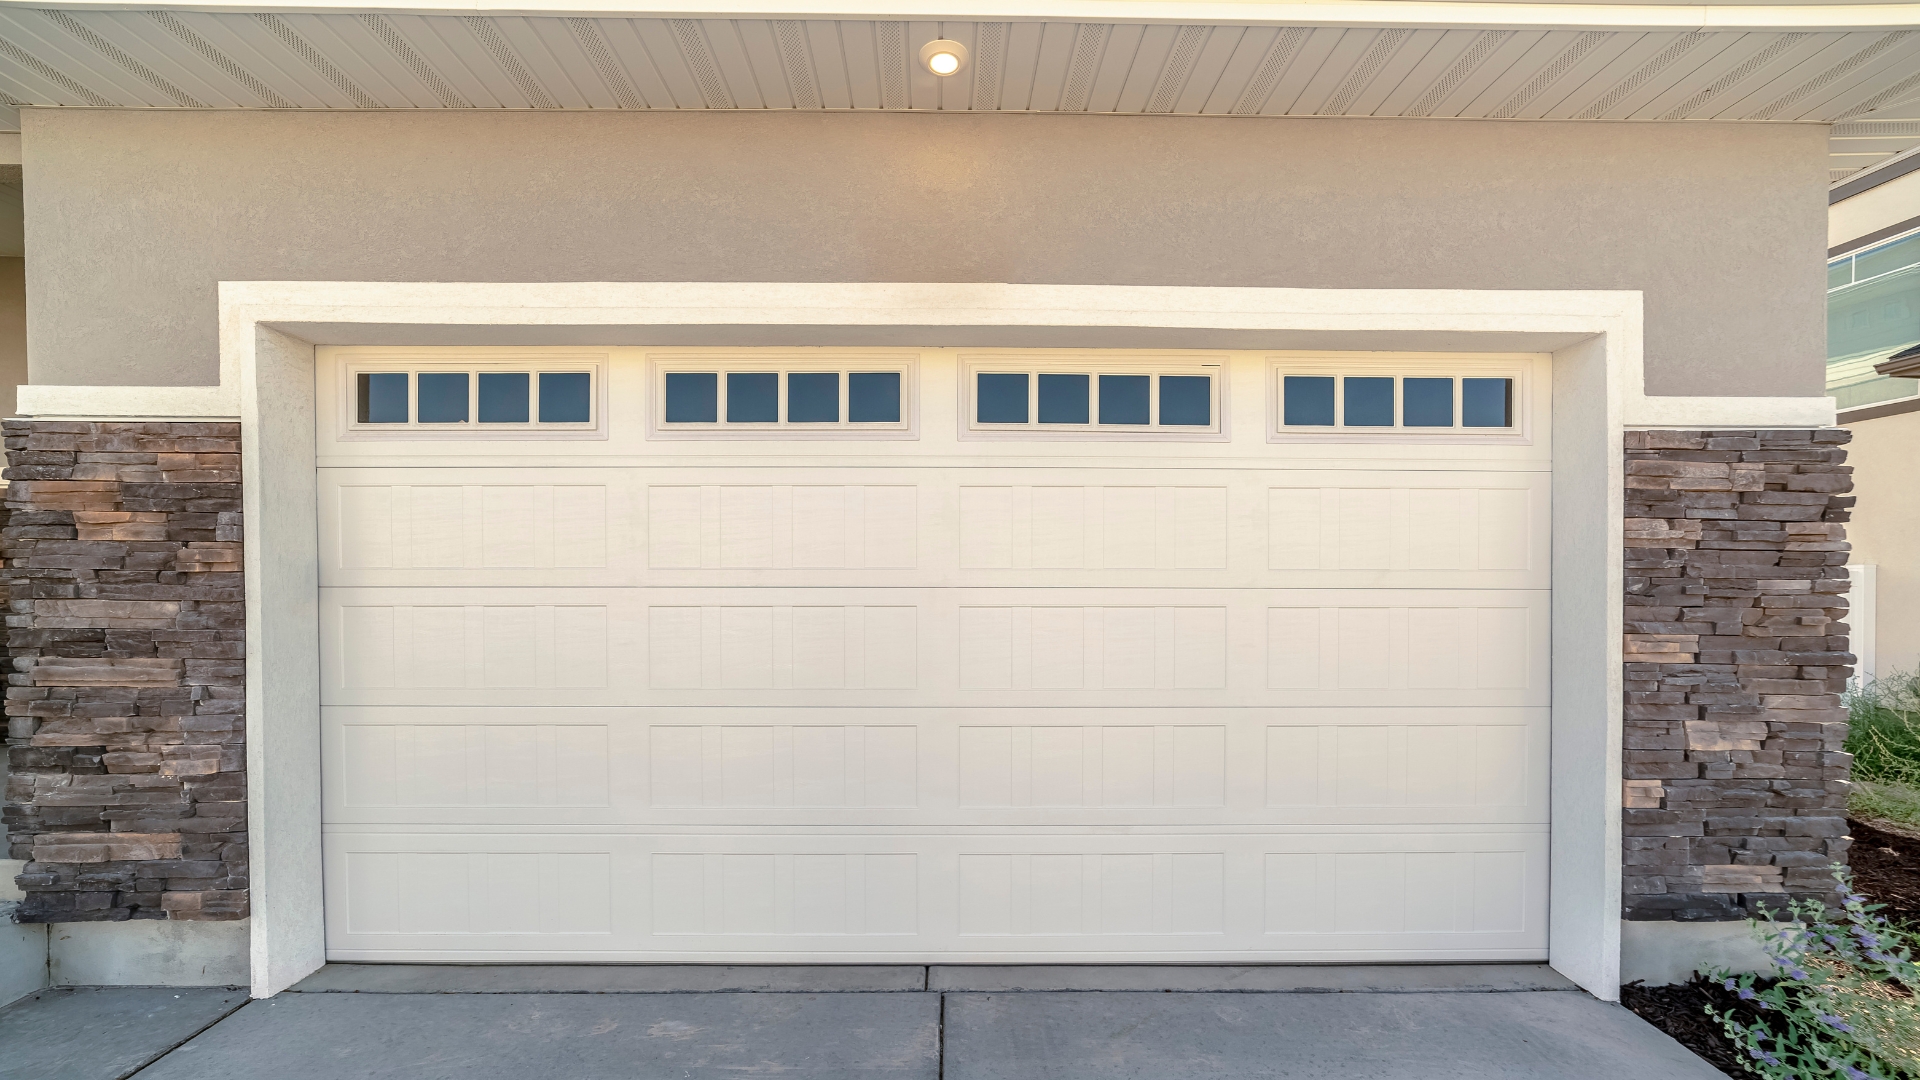 A garage door with window inserts. Garage door window maintenance is essential in keeping their aesthetics